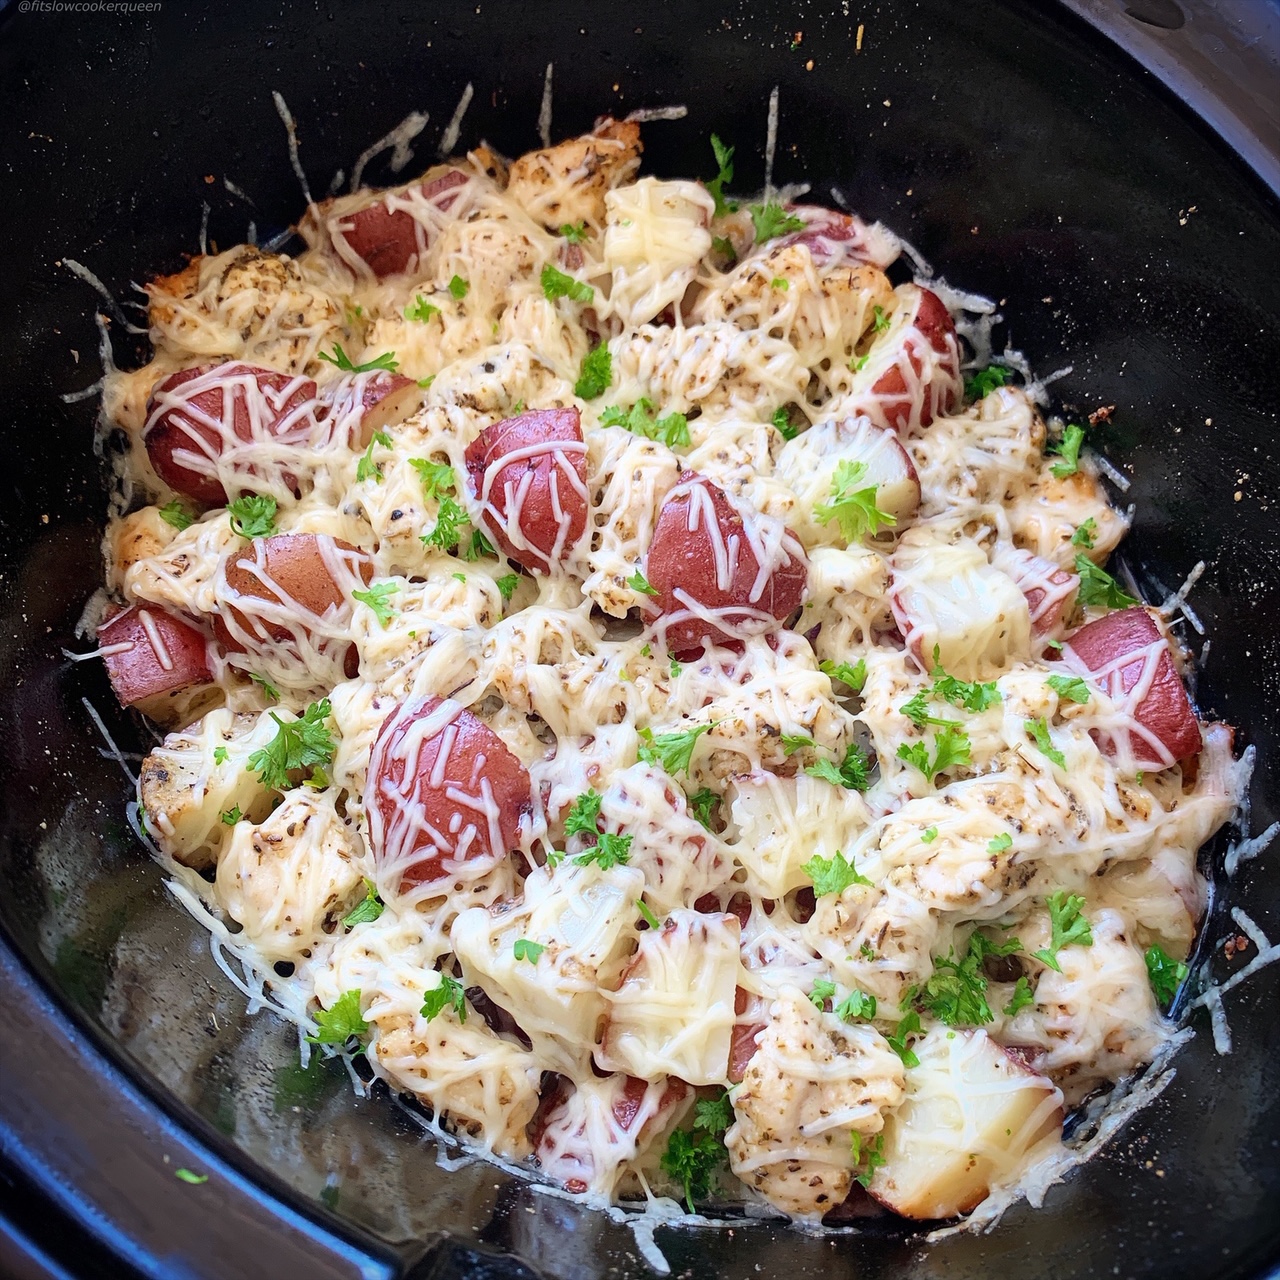 https://fitslowcookerqueen.com/wp-content/uploads/2019/04/VIDEO-Slow-CookerInstant-Pot-Garlic-Parmesan-Chicken-Potatoes-1.jpg